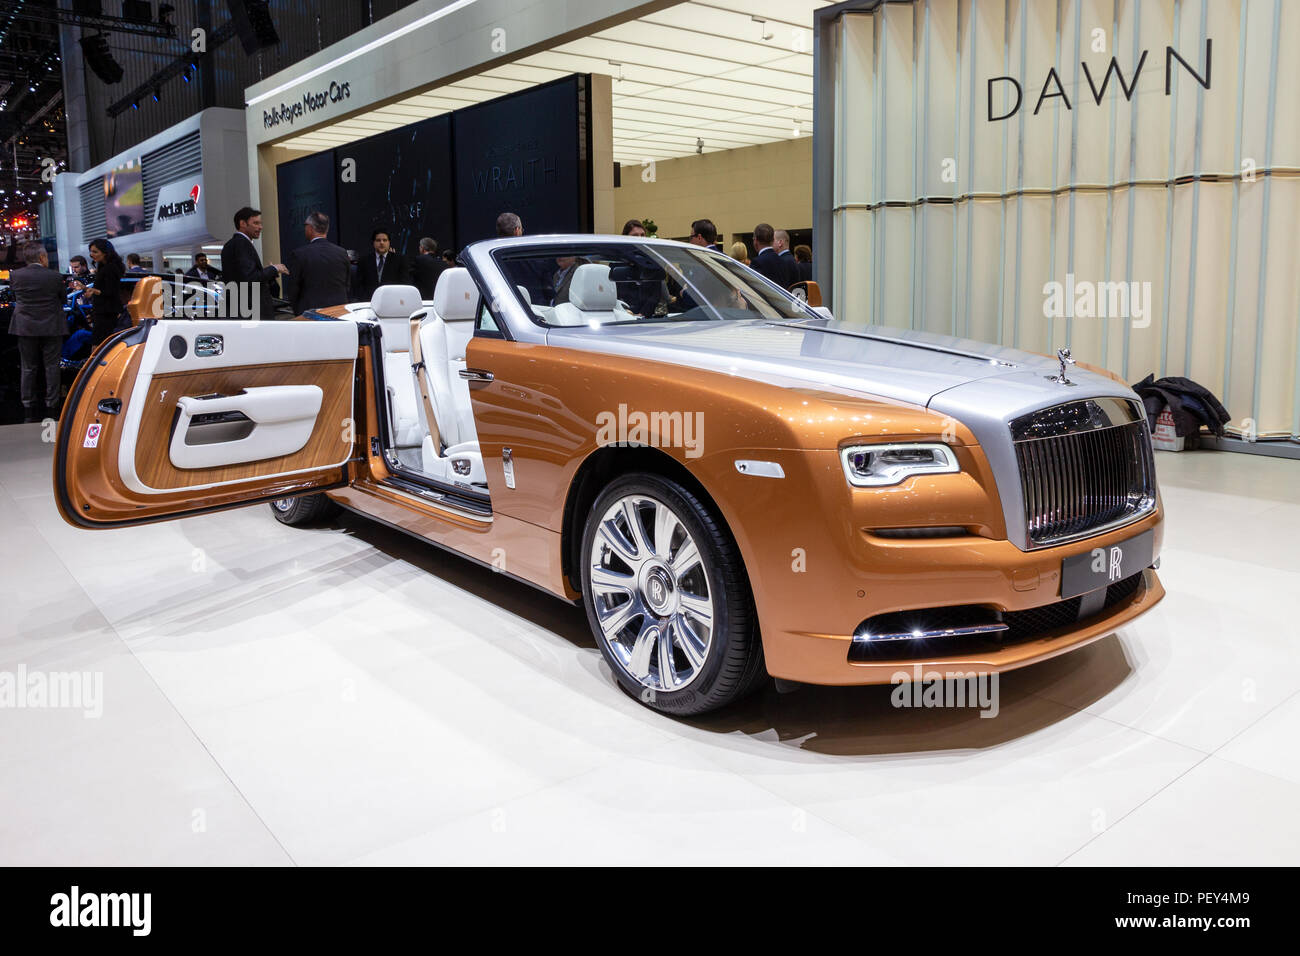 Genf, Schweiz - 1. MÄRZ 2016: Rolls Royce Dawn Luxus Cabriolet präsentiert  auf dem 86. Internationalen Automobilsalon in Genf Stockfotografie - Alamy